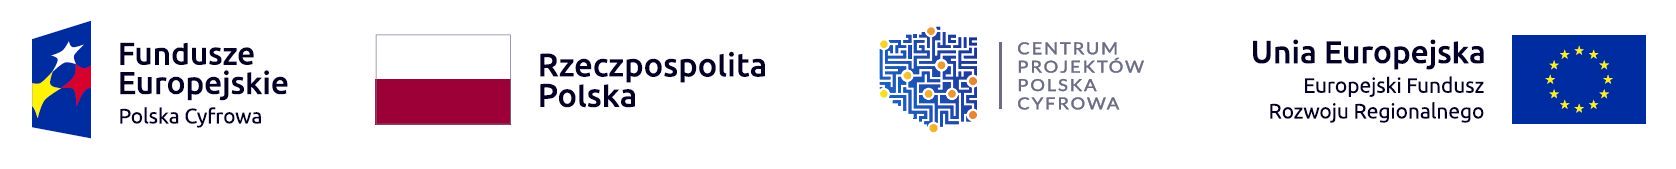 Logo Funduszy Europejskich Polska Cyfrowa, Rzeczpospolitej Polskiej, Centrum Projektów Polska Cyfrowa, Unii Europejskiej Europejskiego Funduszu Rozowju Regionalnego